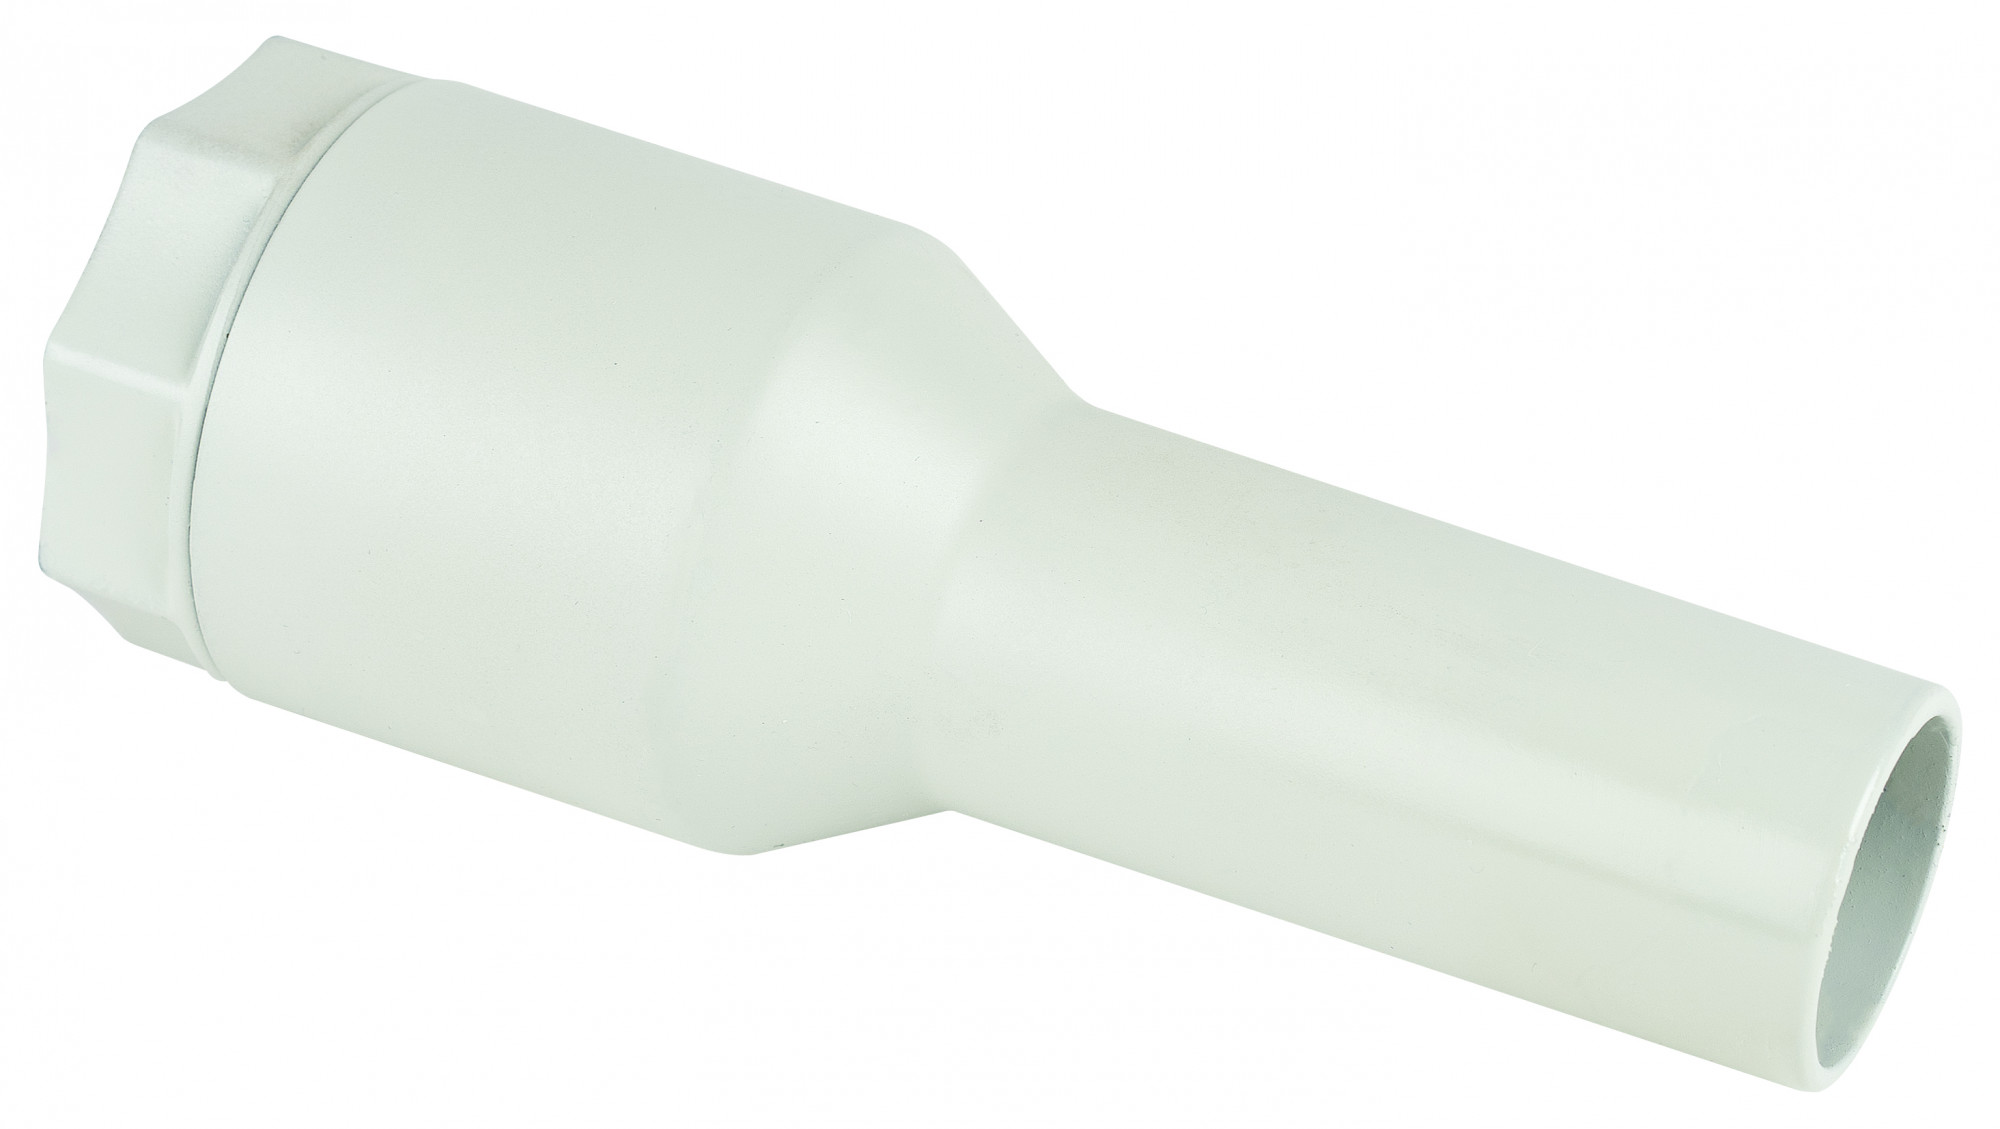 Raccordo girevole per applicare le spazzole direttamente al tubo flessibile Ø32